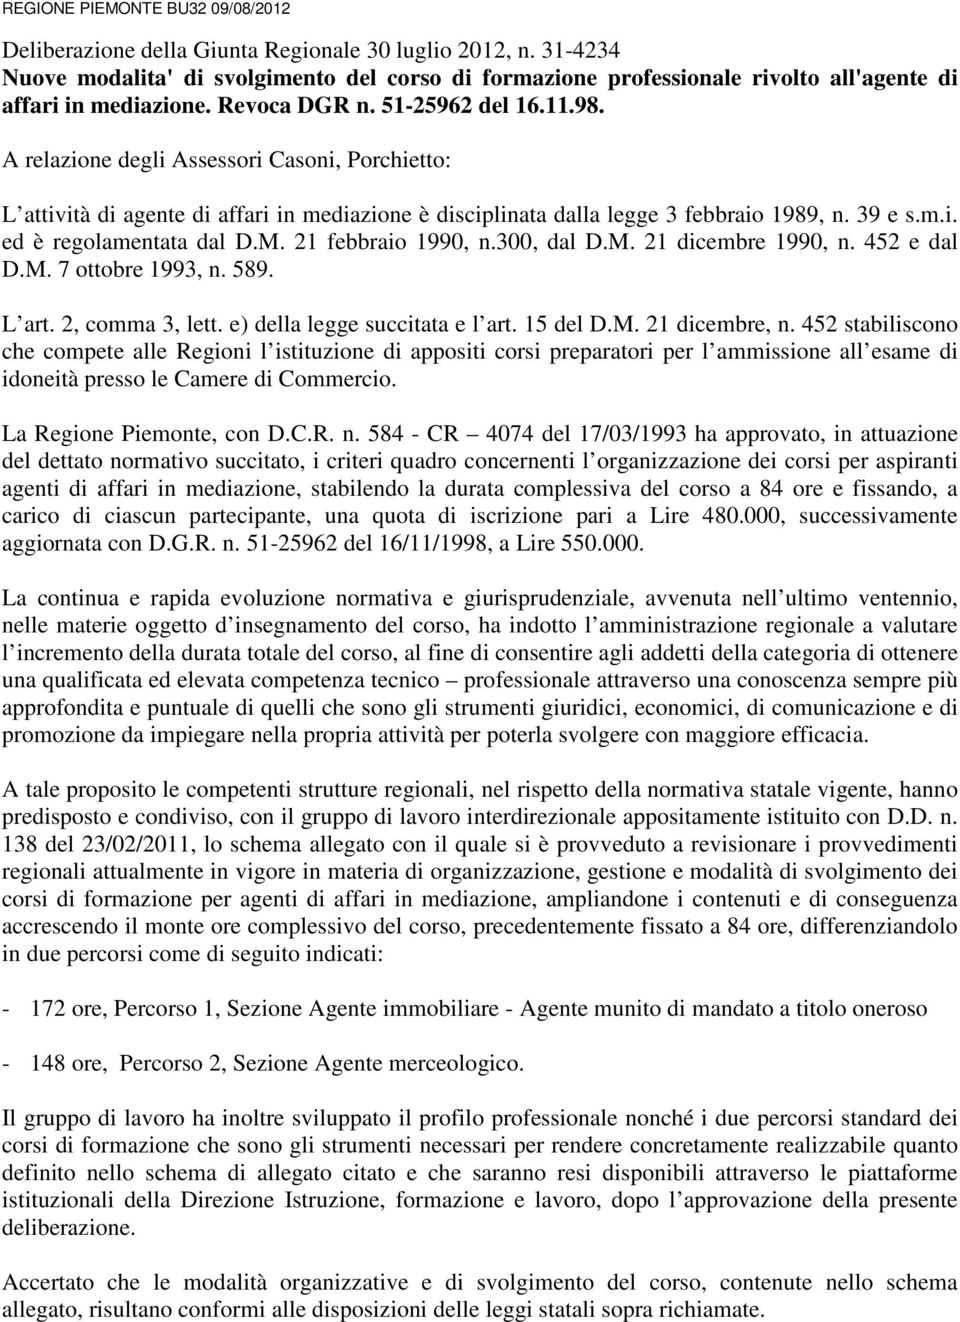 A relazione degli Assessori Casoni, Porchietto: L attività di agente di affari in mediazione è disciplinata dalla legge 3 febbraio 1989, n. 39 e s.m.i. ed è regolamentata dal D.M. 21 febbraio 1990, n.